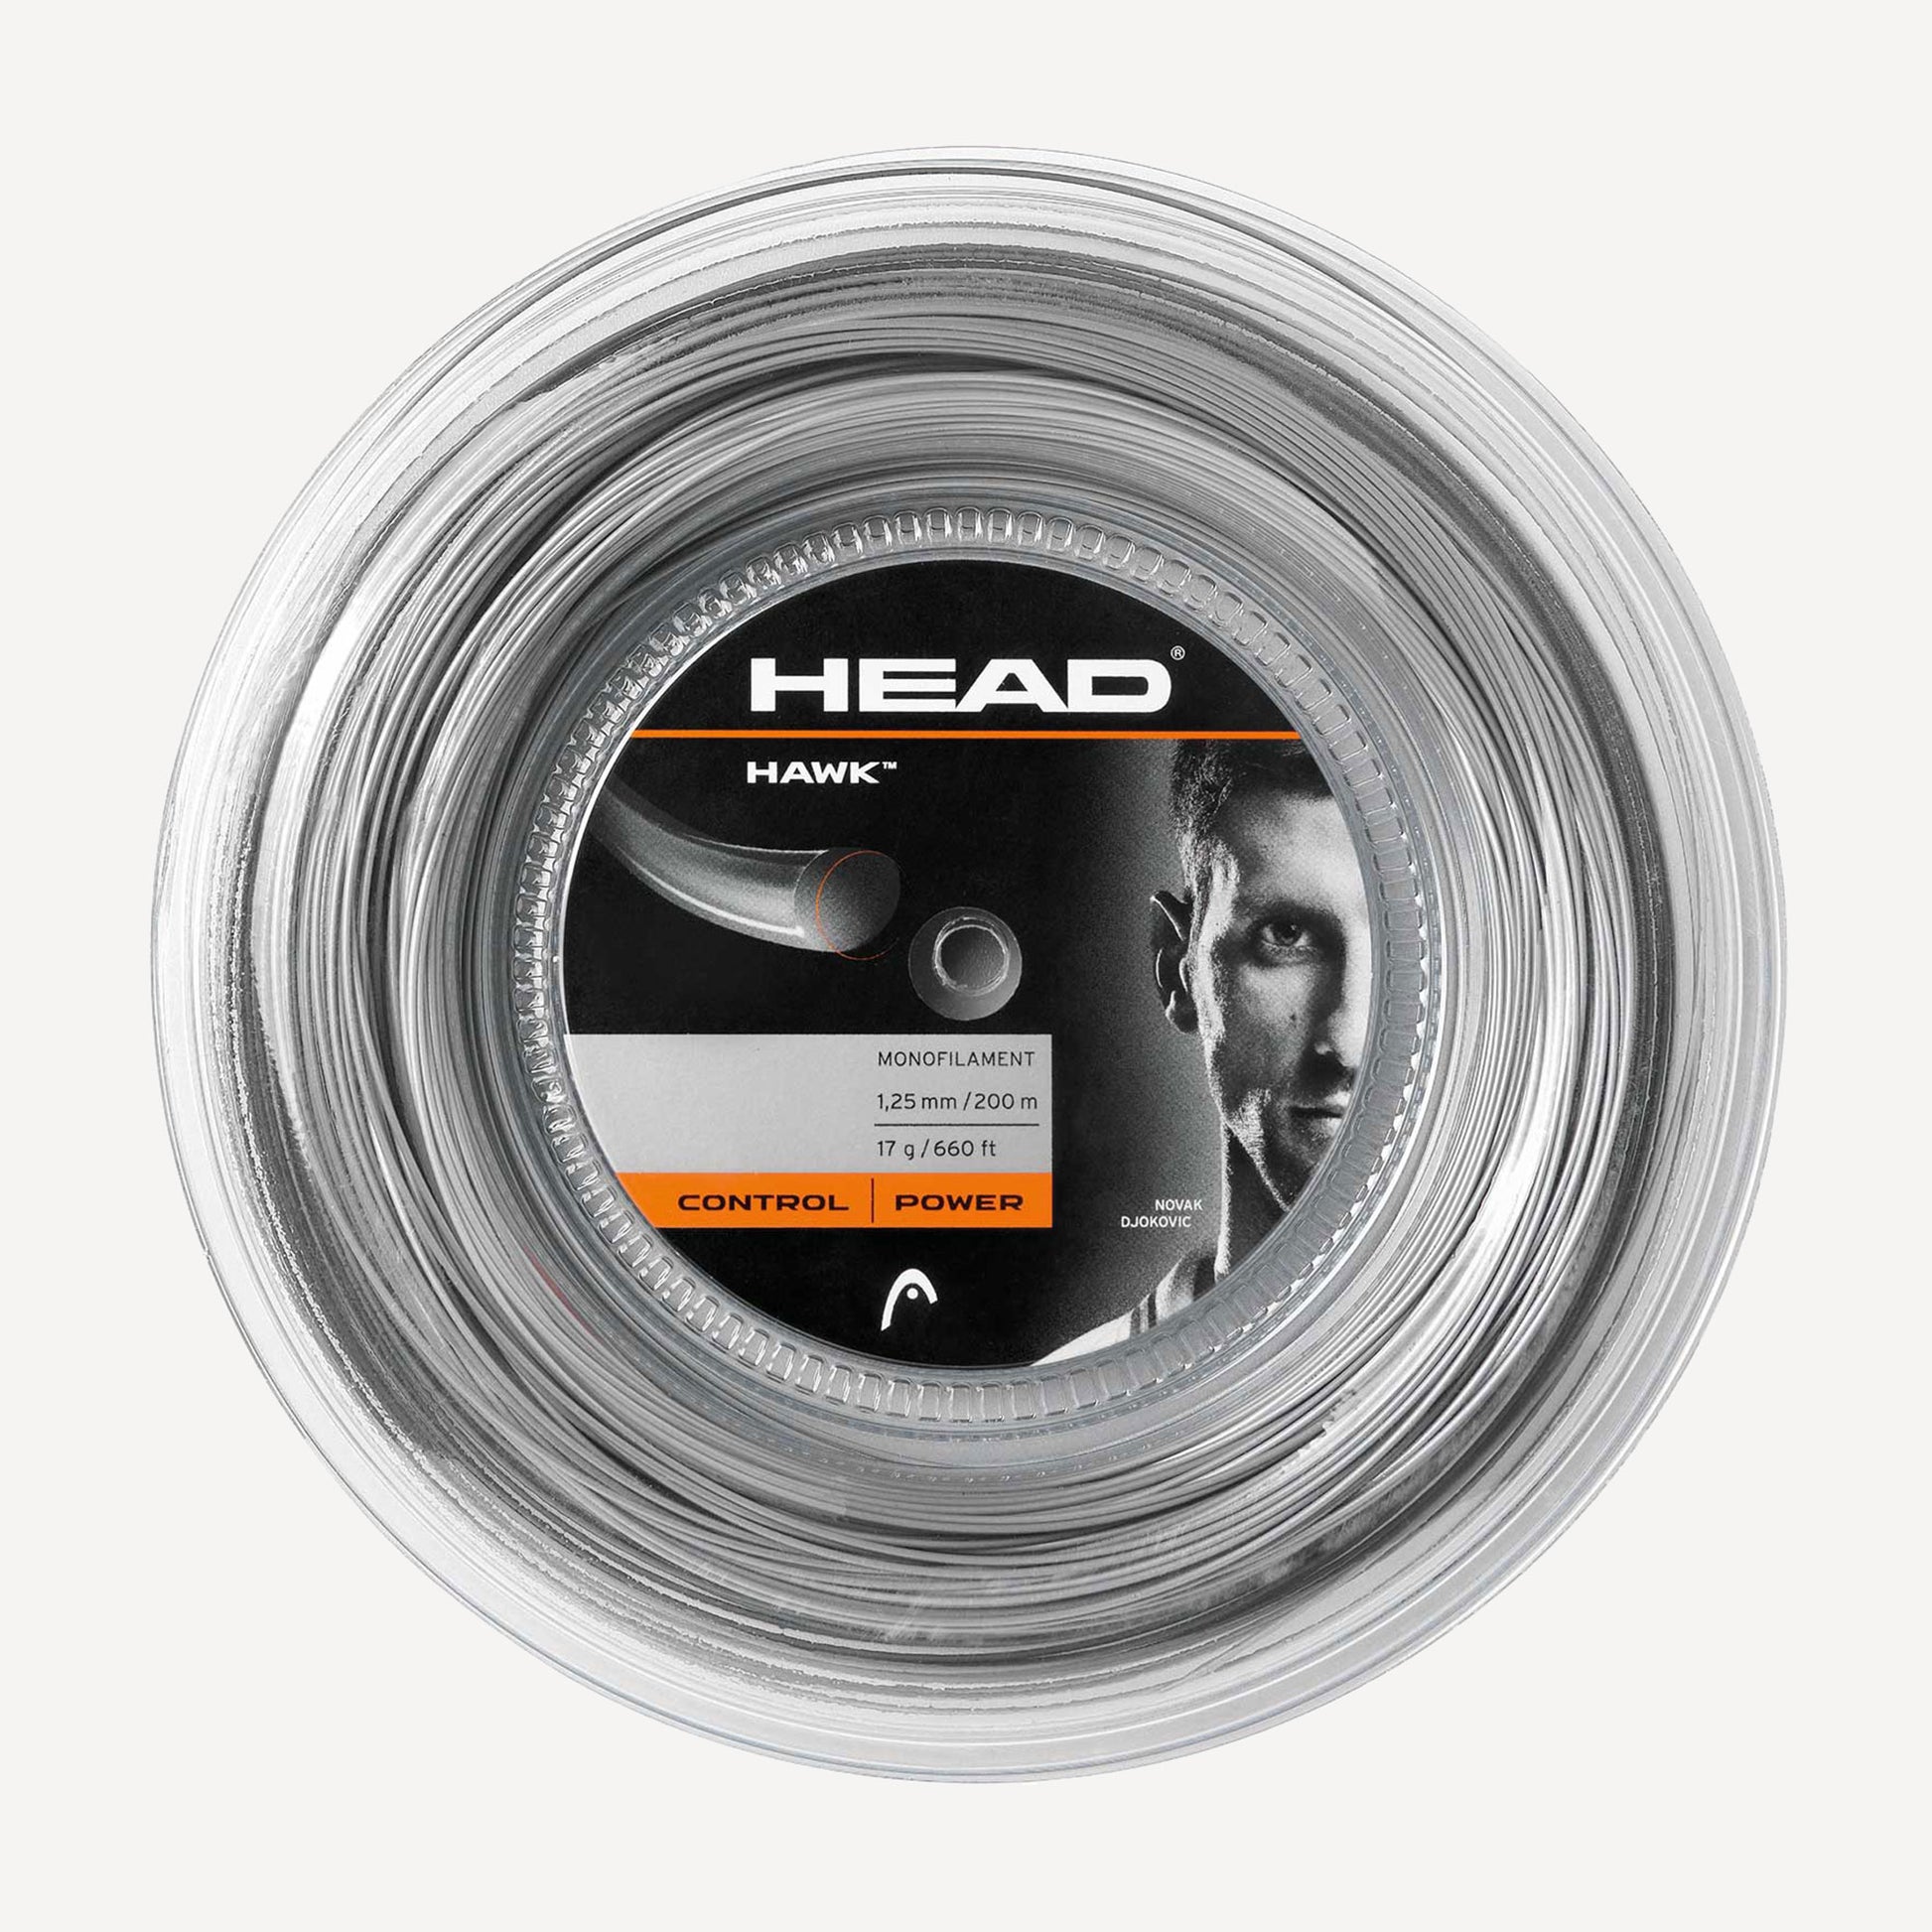 HEAD Hawk Tennis String Reel 200m Grey